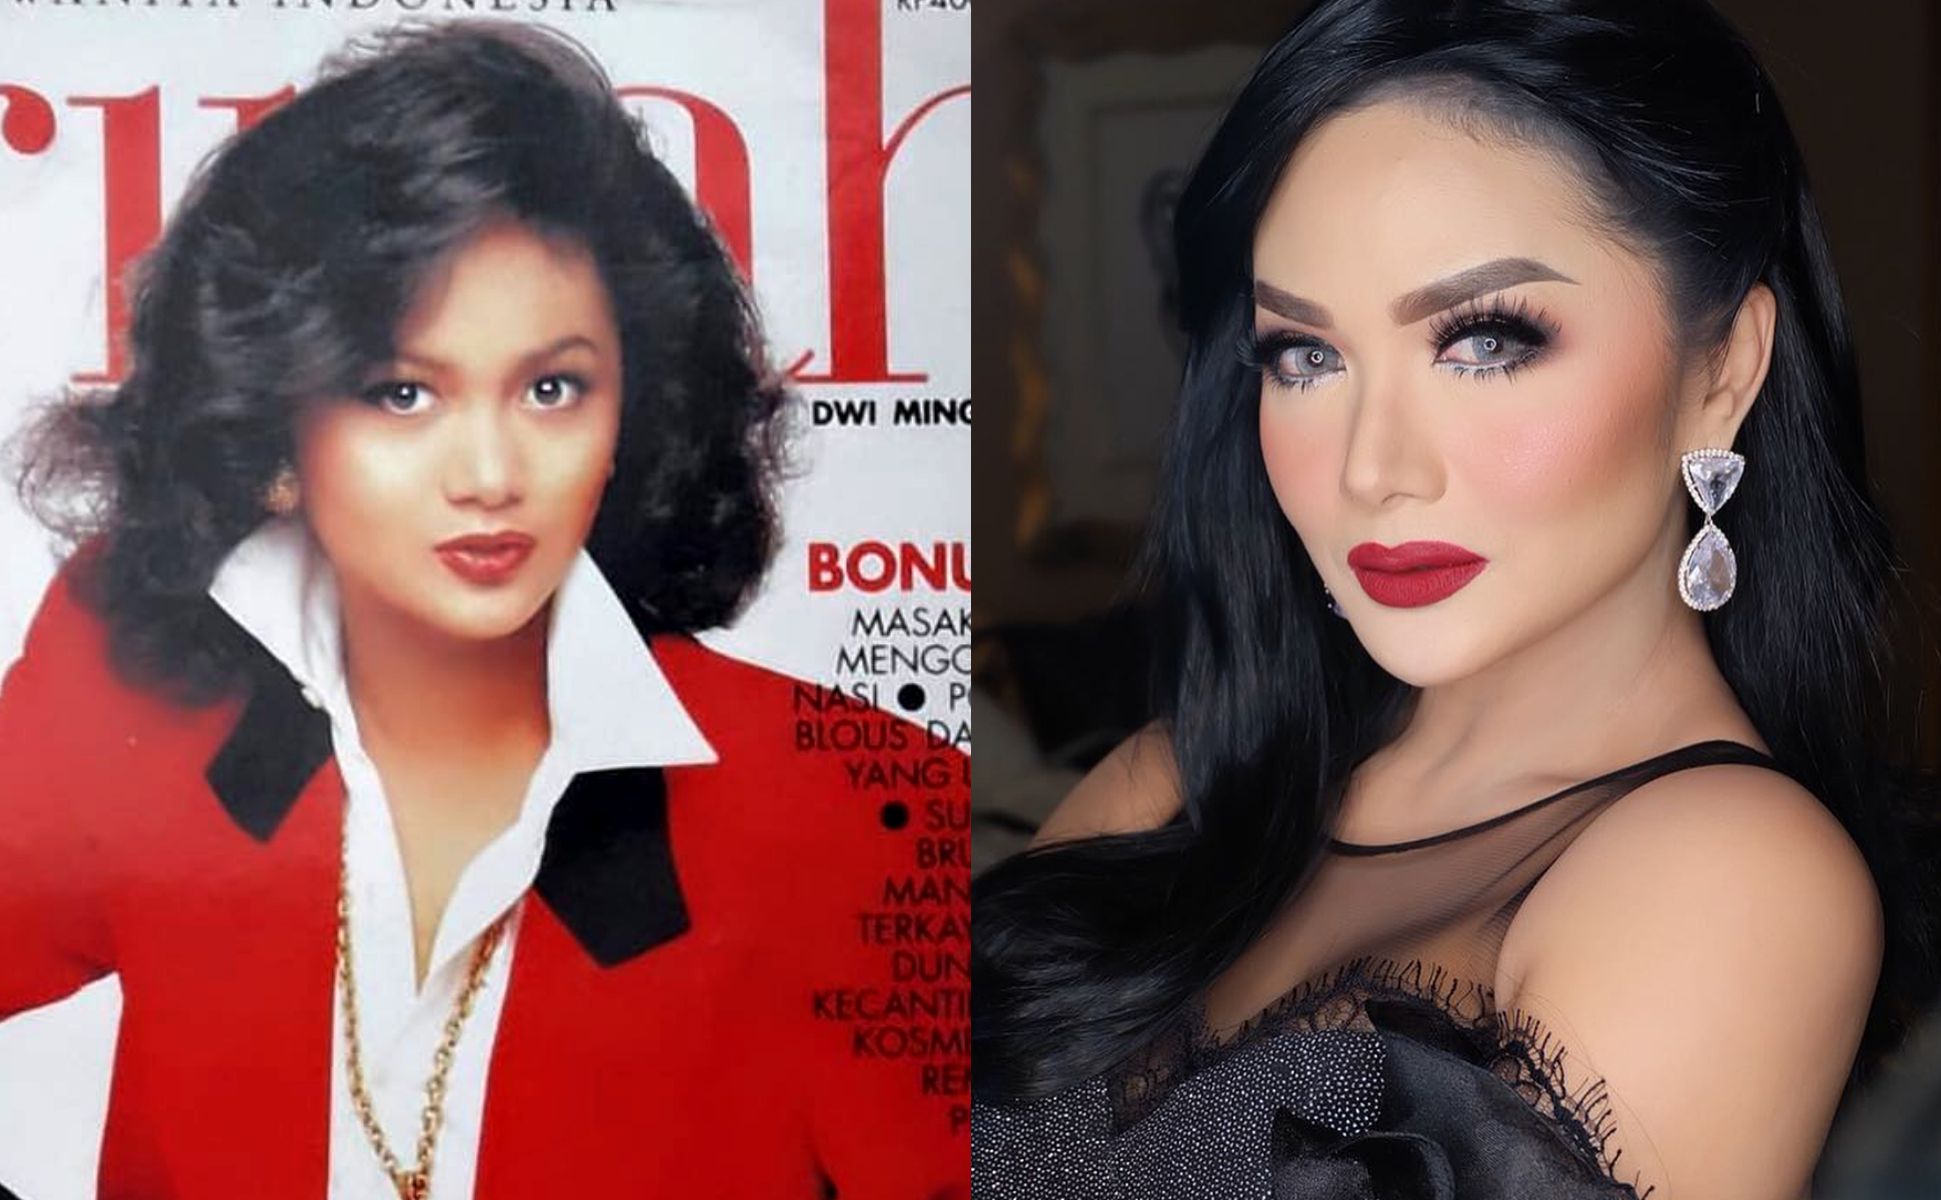 Perbedaan gaya makeup Krisdayanti yang dulu dengan yang sekarang